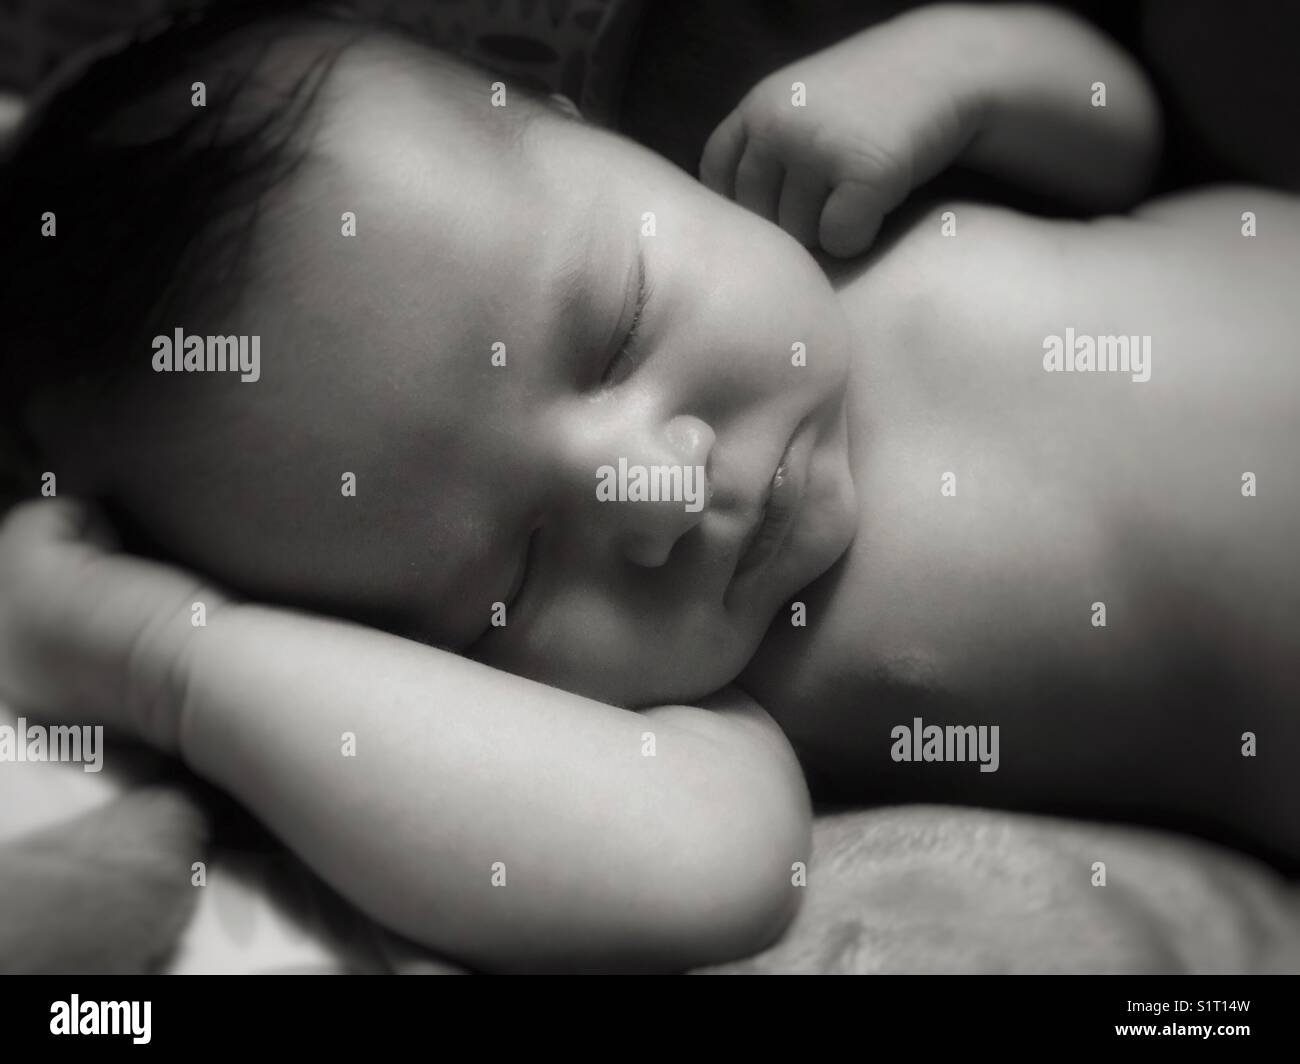 Sleeping baby Stock Photo